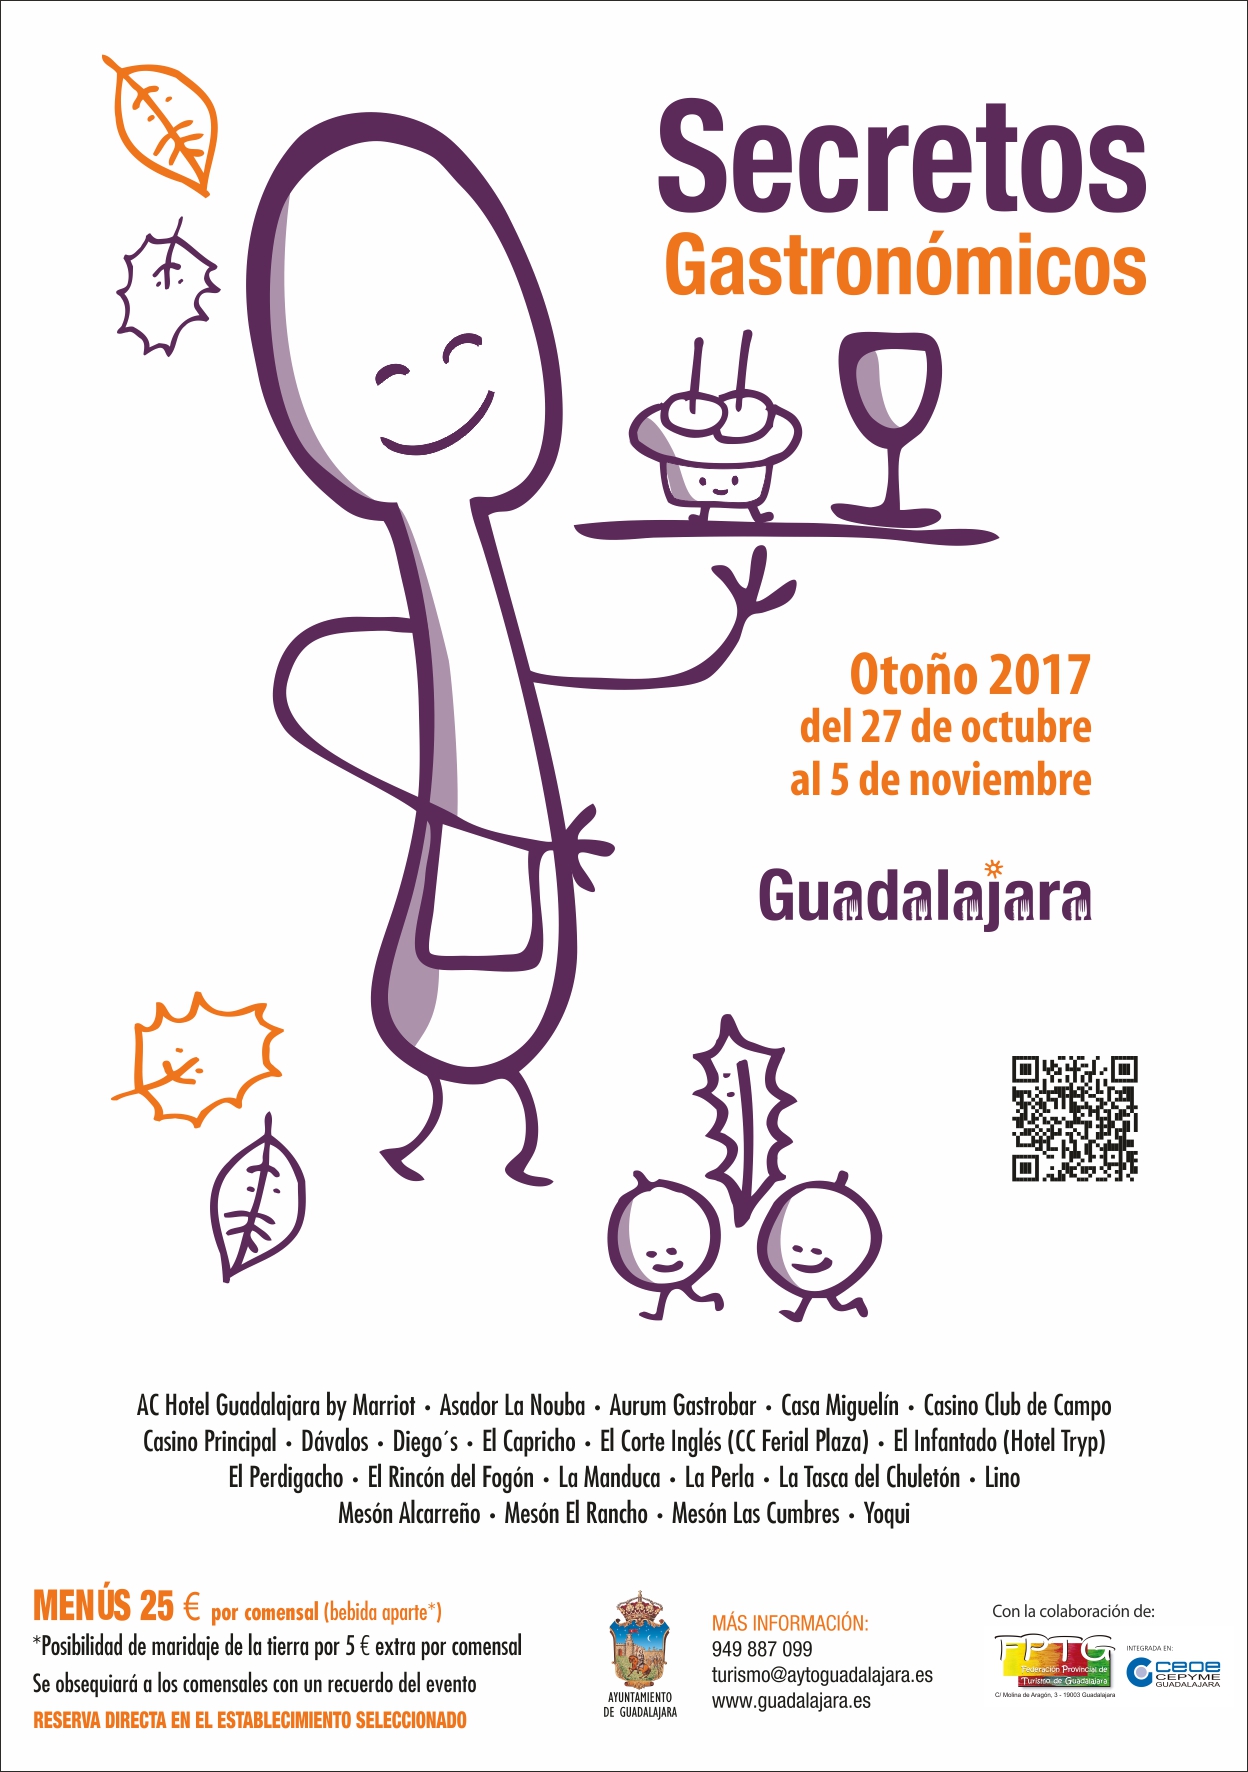 Cartel de las jornadas "Secretos Gastronómicos" de Guadalajara.